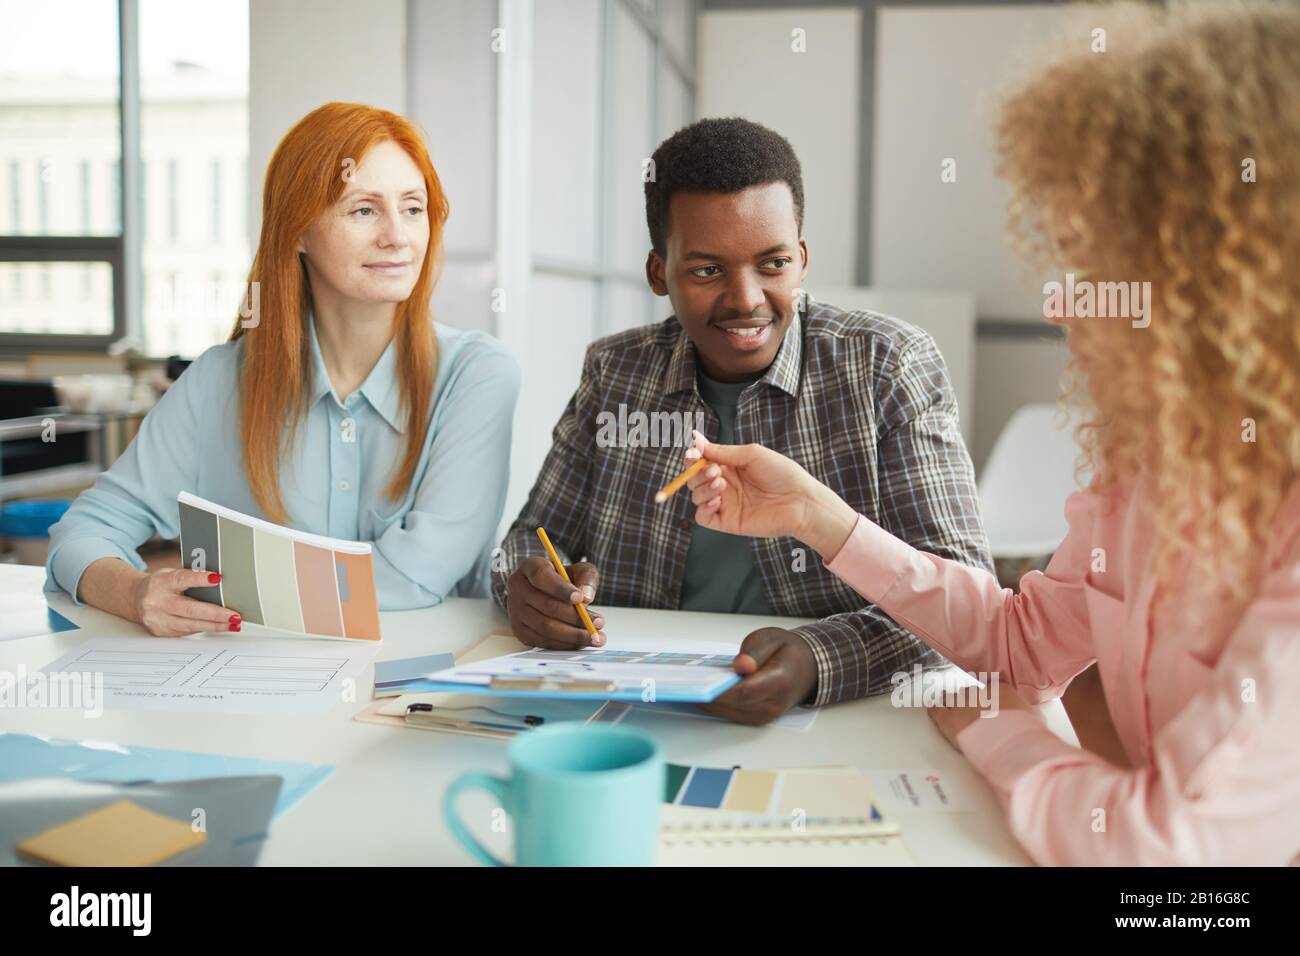 Portrait des jungen afroamerikanischen Mannes, der während eines Treffens mit dem Team im modernen Büro über kreatives Projekt spricht, Copy-Space Stockfoto